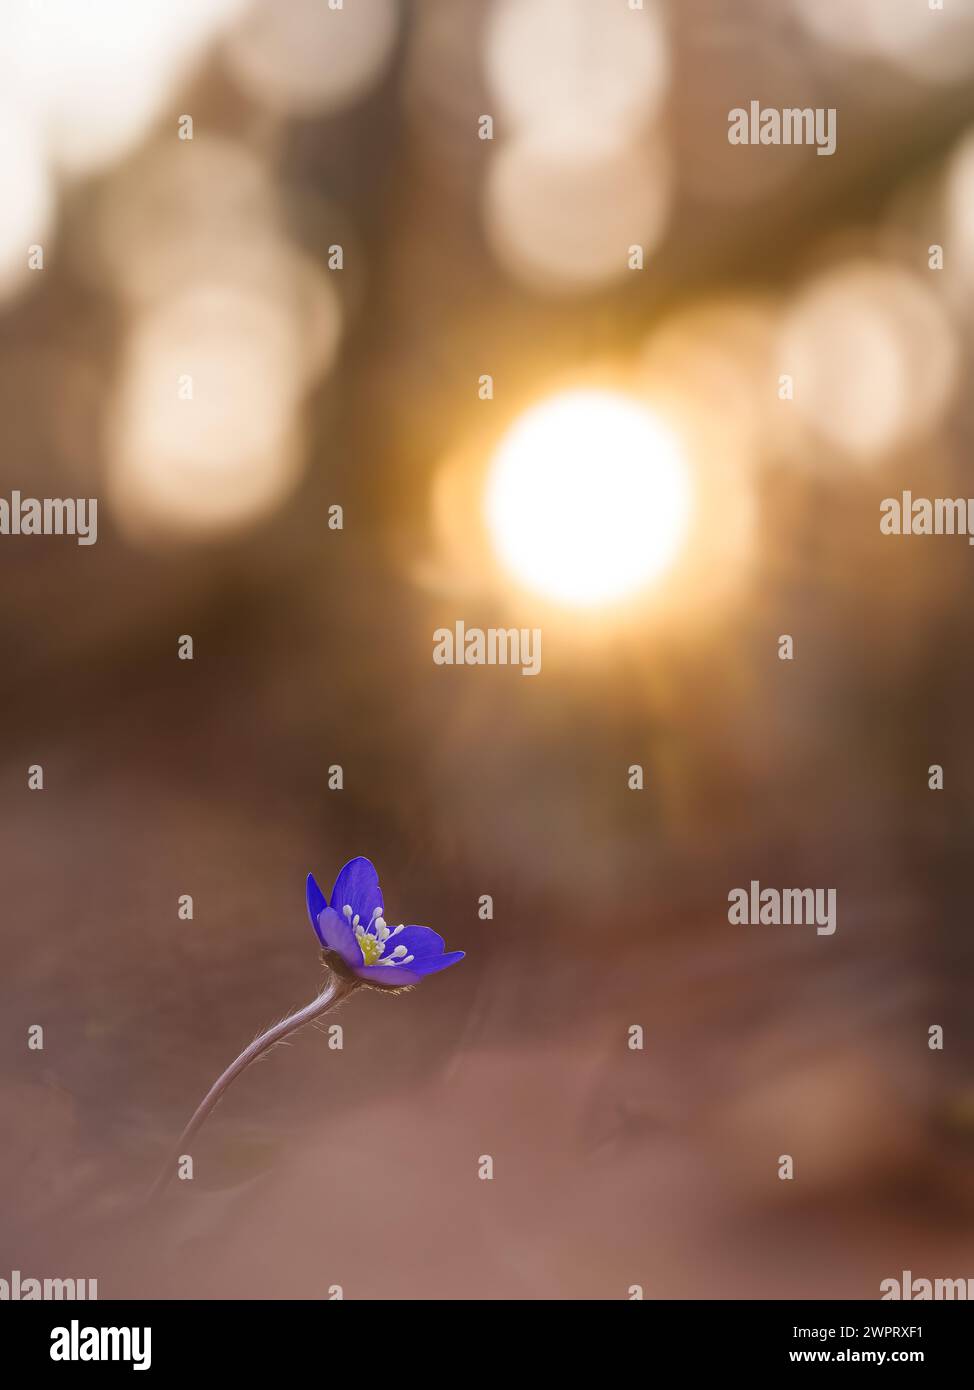 Une seule fleur d'hepatica se distingue par ses pétales violets vibrants au milieu de la douce concentration, se prélasser dans la lueur chaude d'un soleil couchant dans le woodlan suédois Banque D'Images